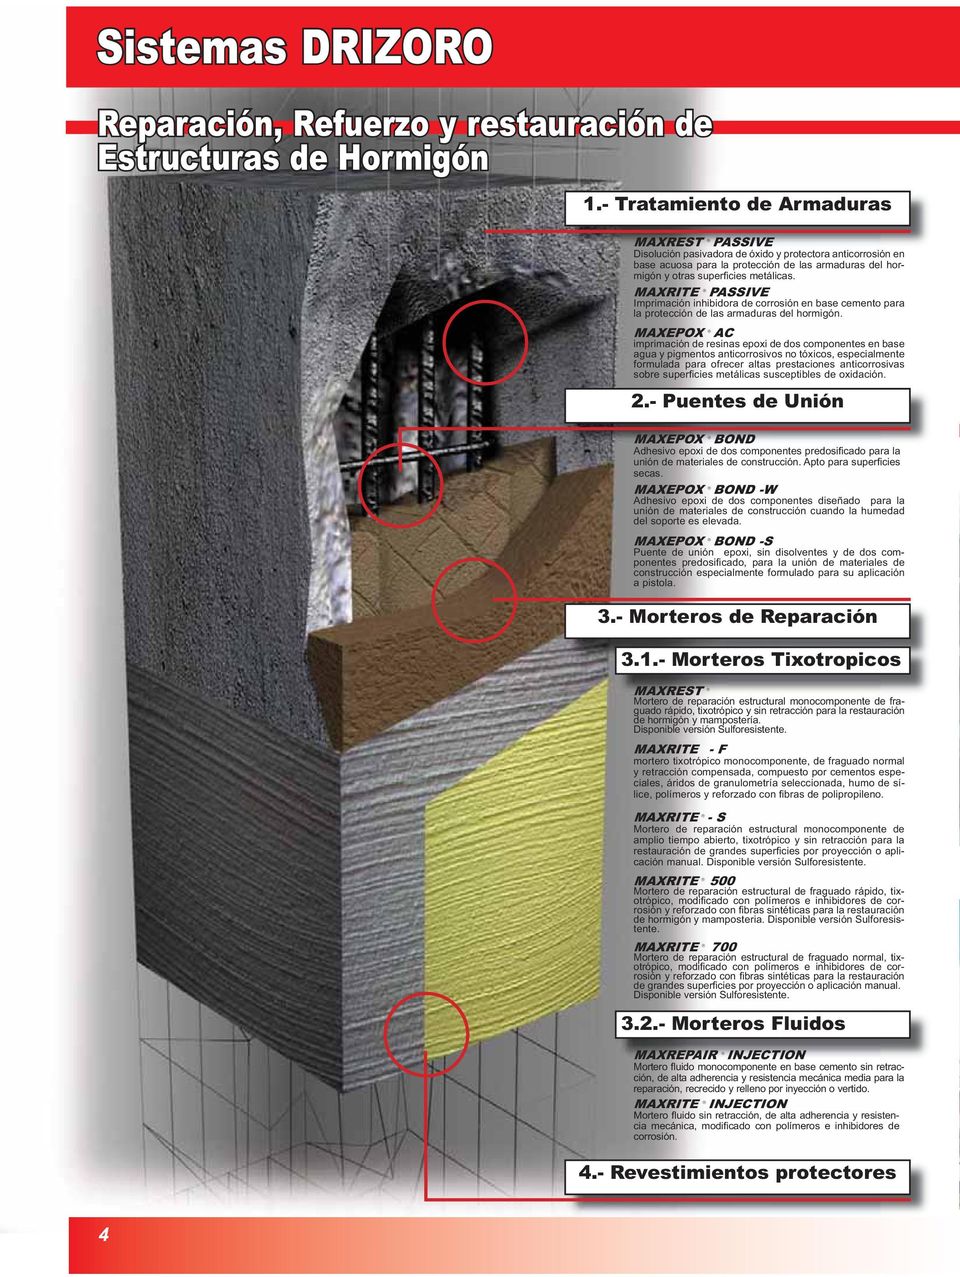 MAXRITE PASSIVE Imprimación inhibidora de corrosión en base cemento para la protección de las armaduras del hormigón.